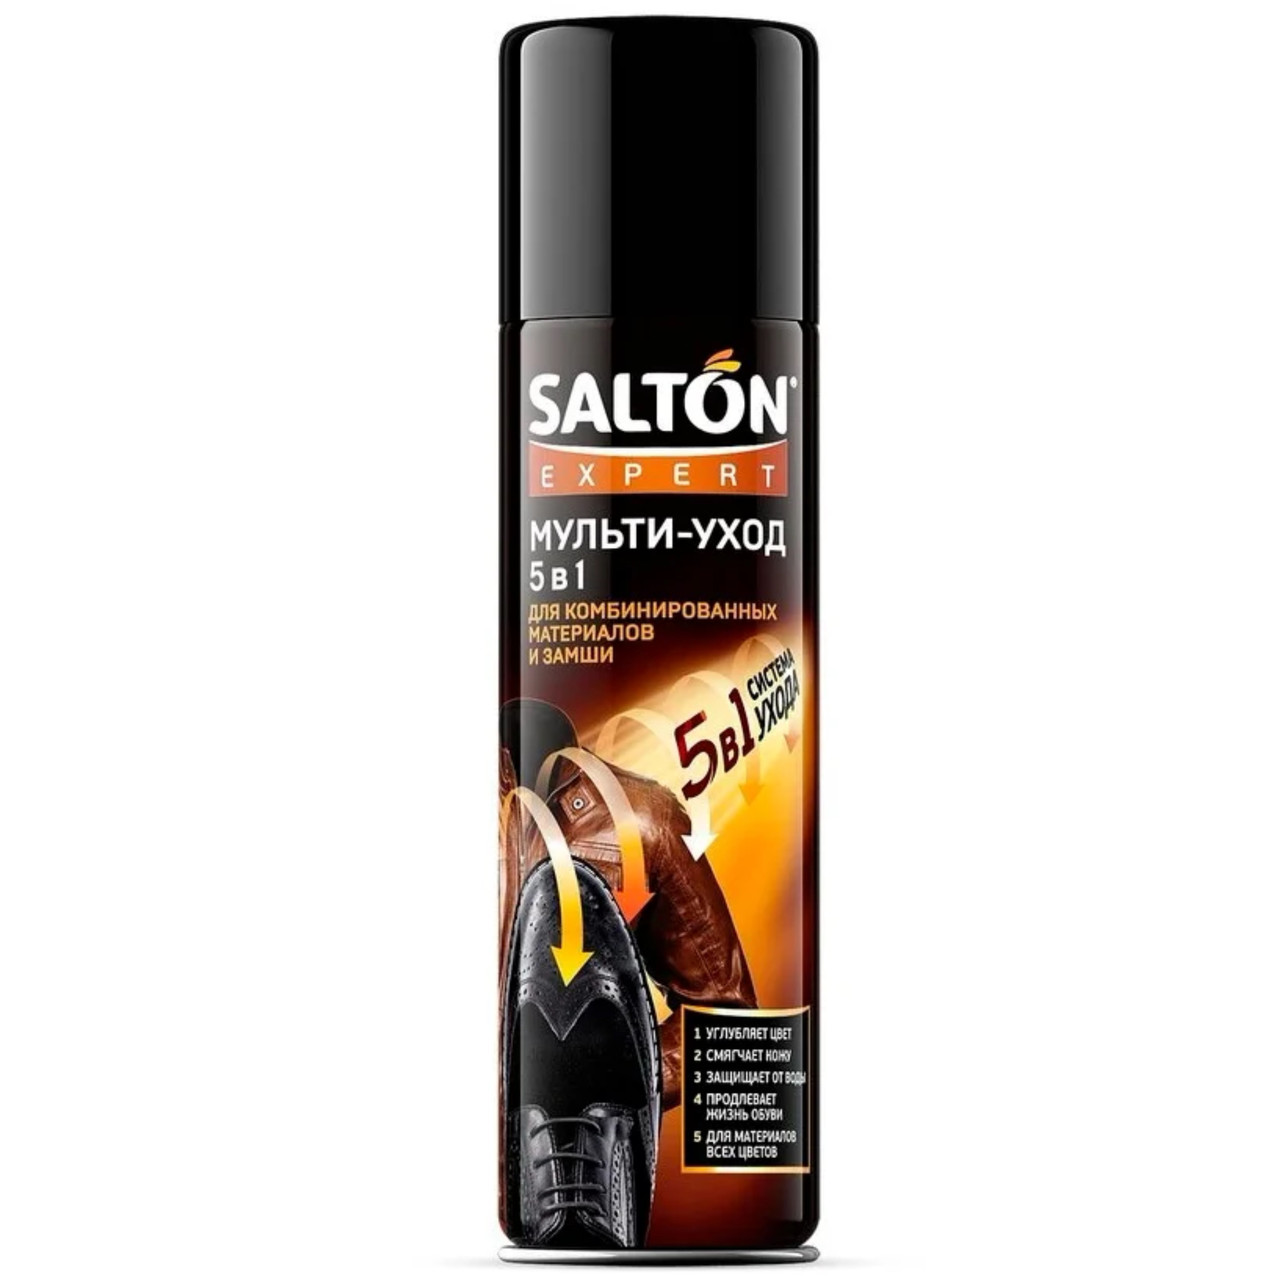 Мульти-уход Salton Expert 5в1 для комбинированных материалов и замши, 250мл